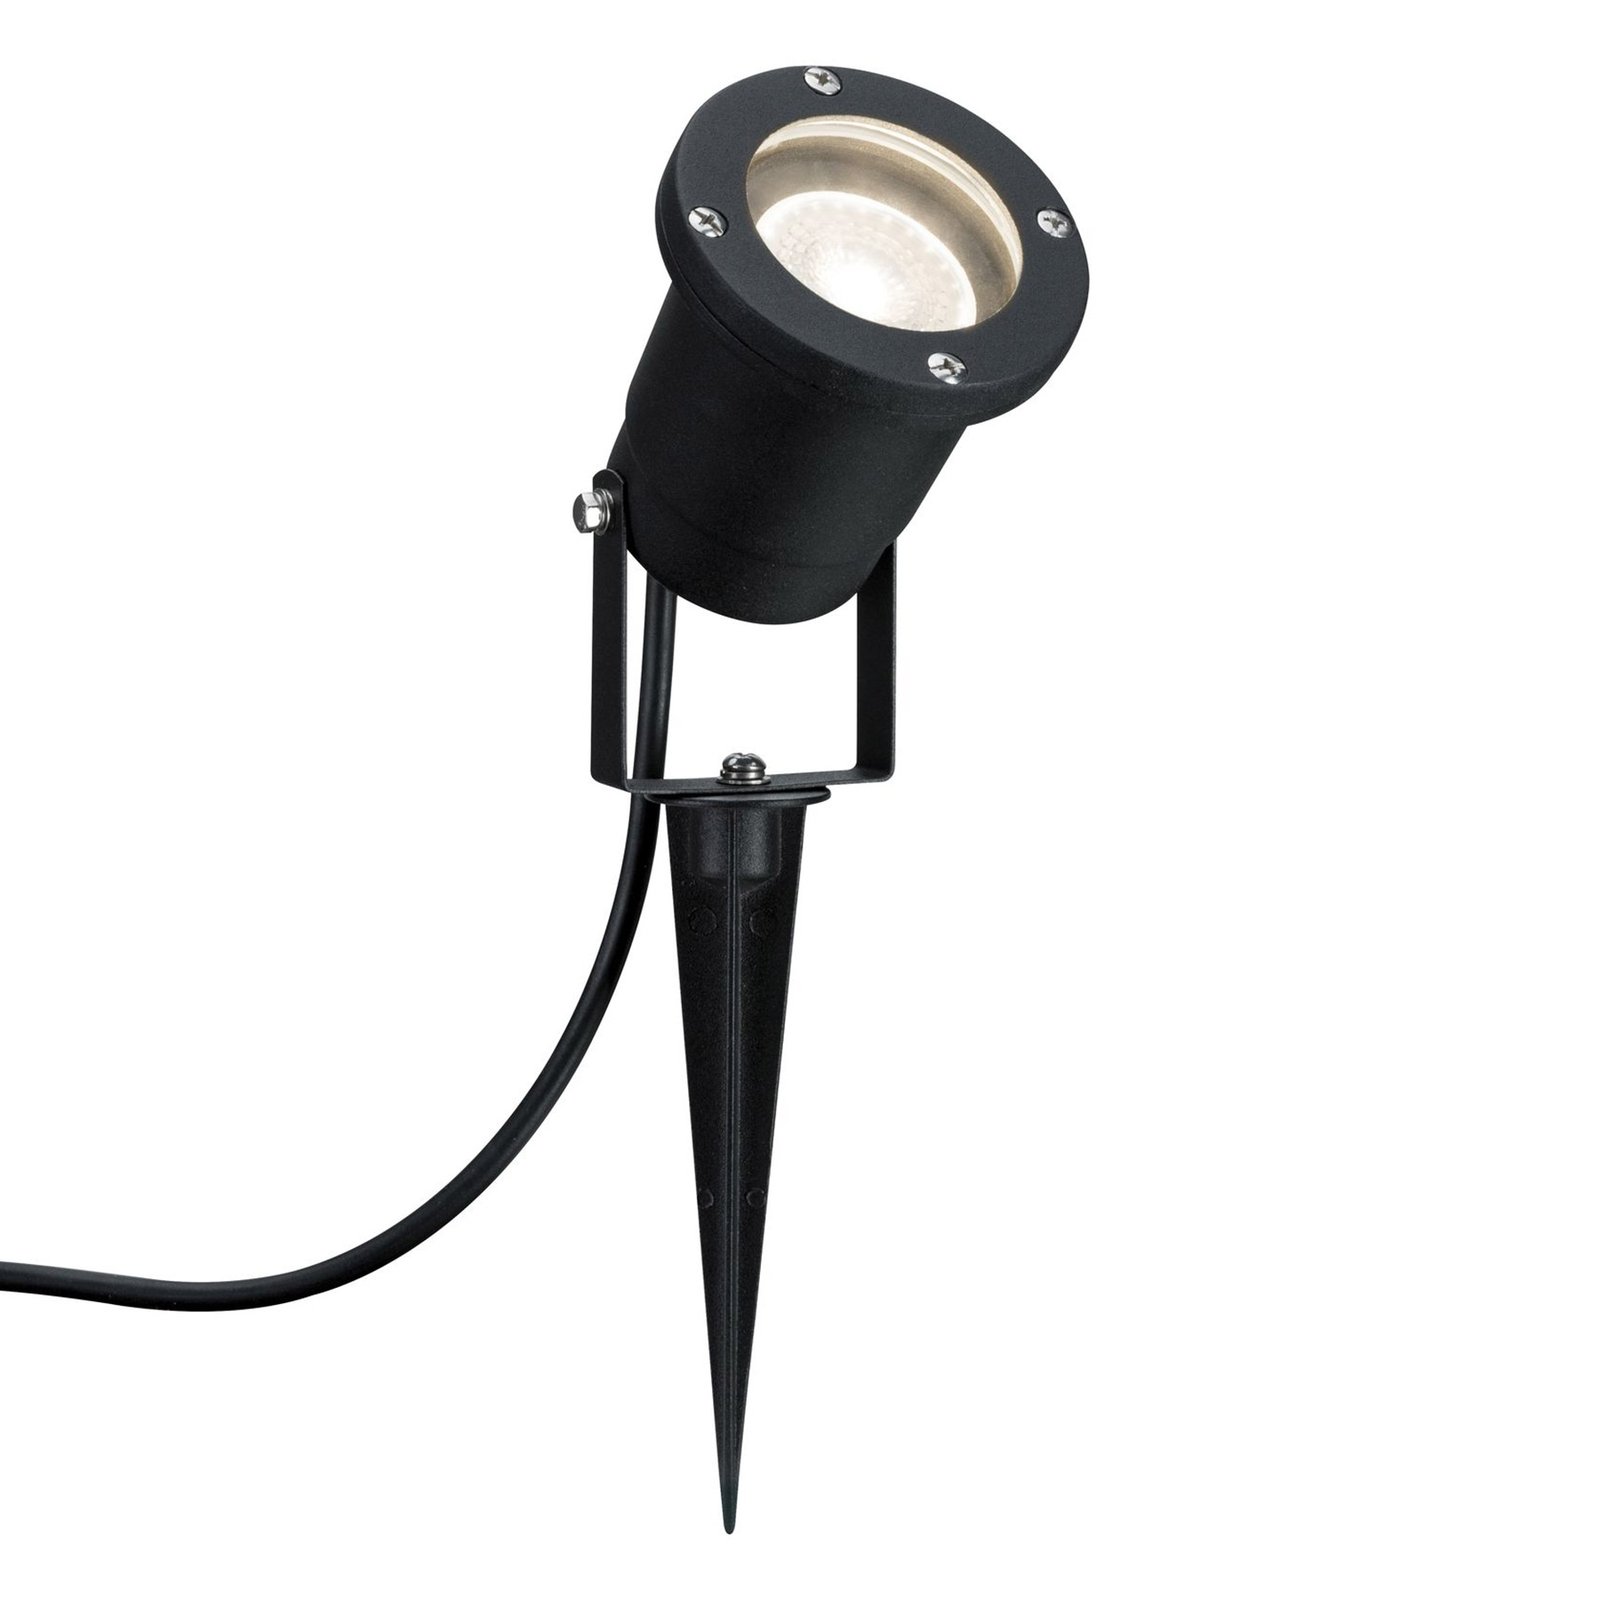 Paulmann speciaal Line LED grondspies lamp, zwart